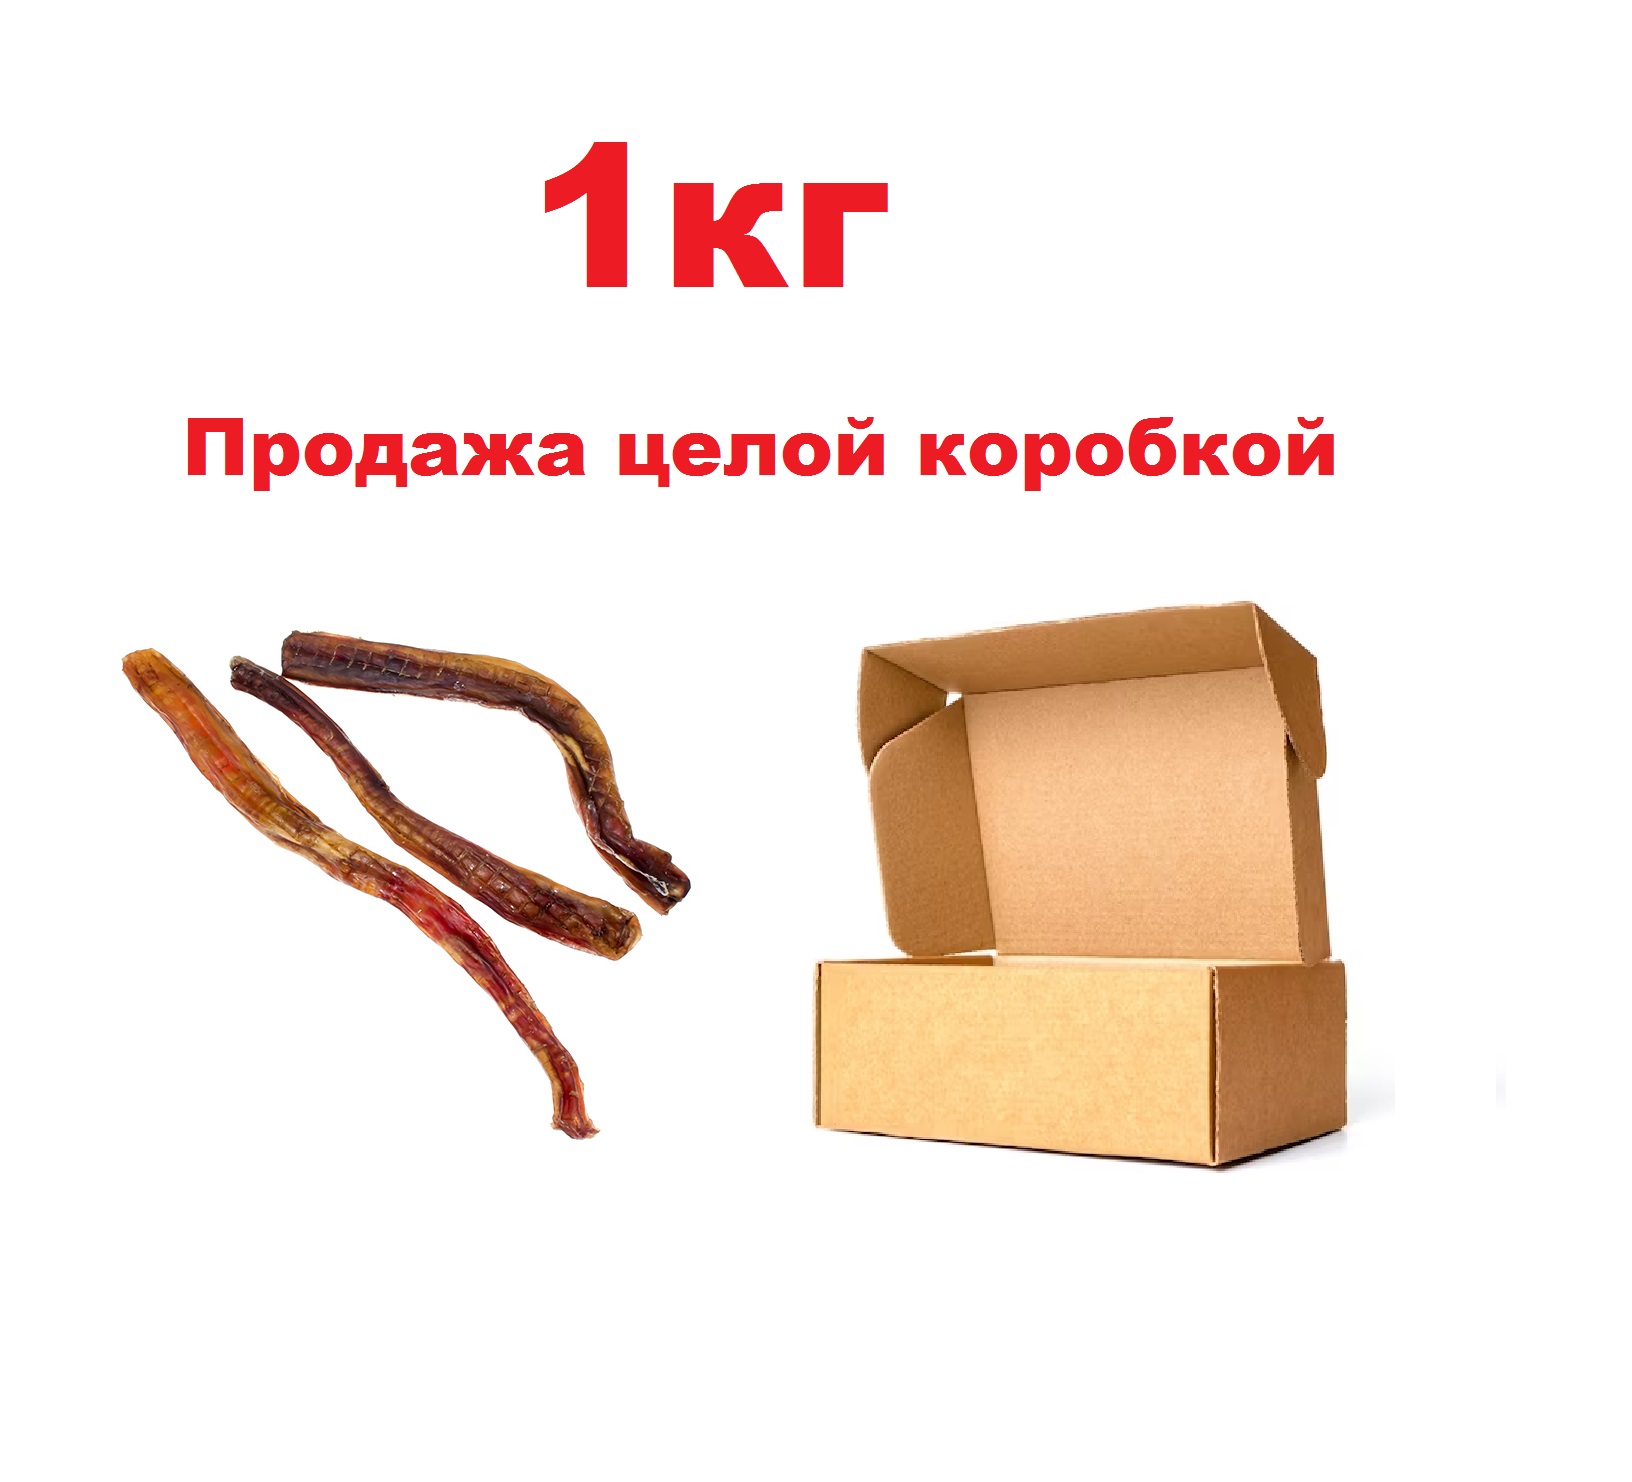 Корень Бычий XL 1кг (Алтайские лакомства) + Подарок